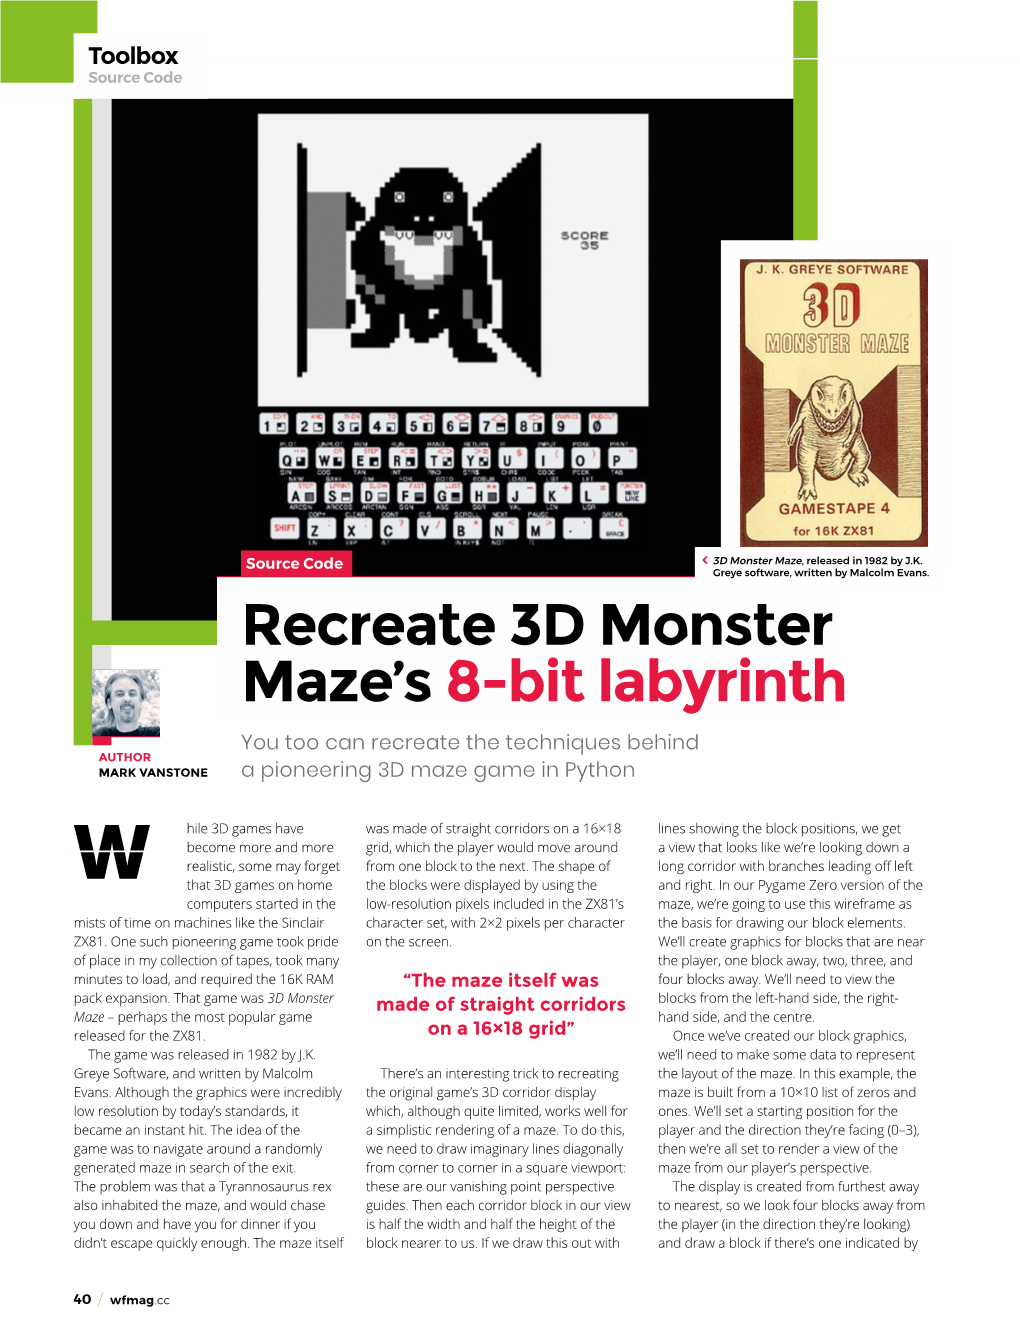 Recreate 3D Monster Maze's 8-Bit Labyrinth